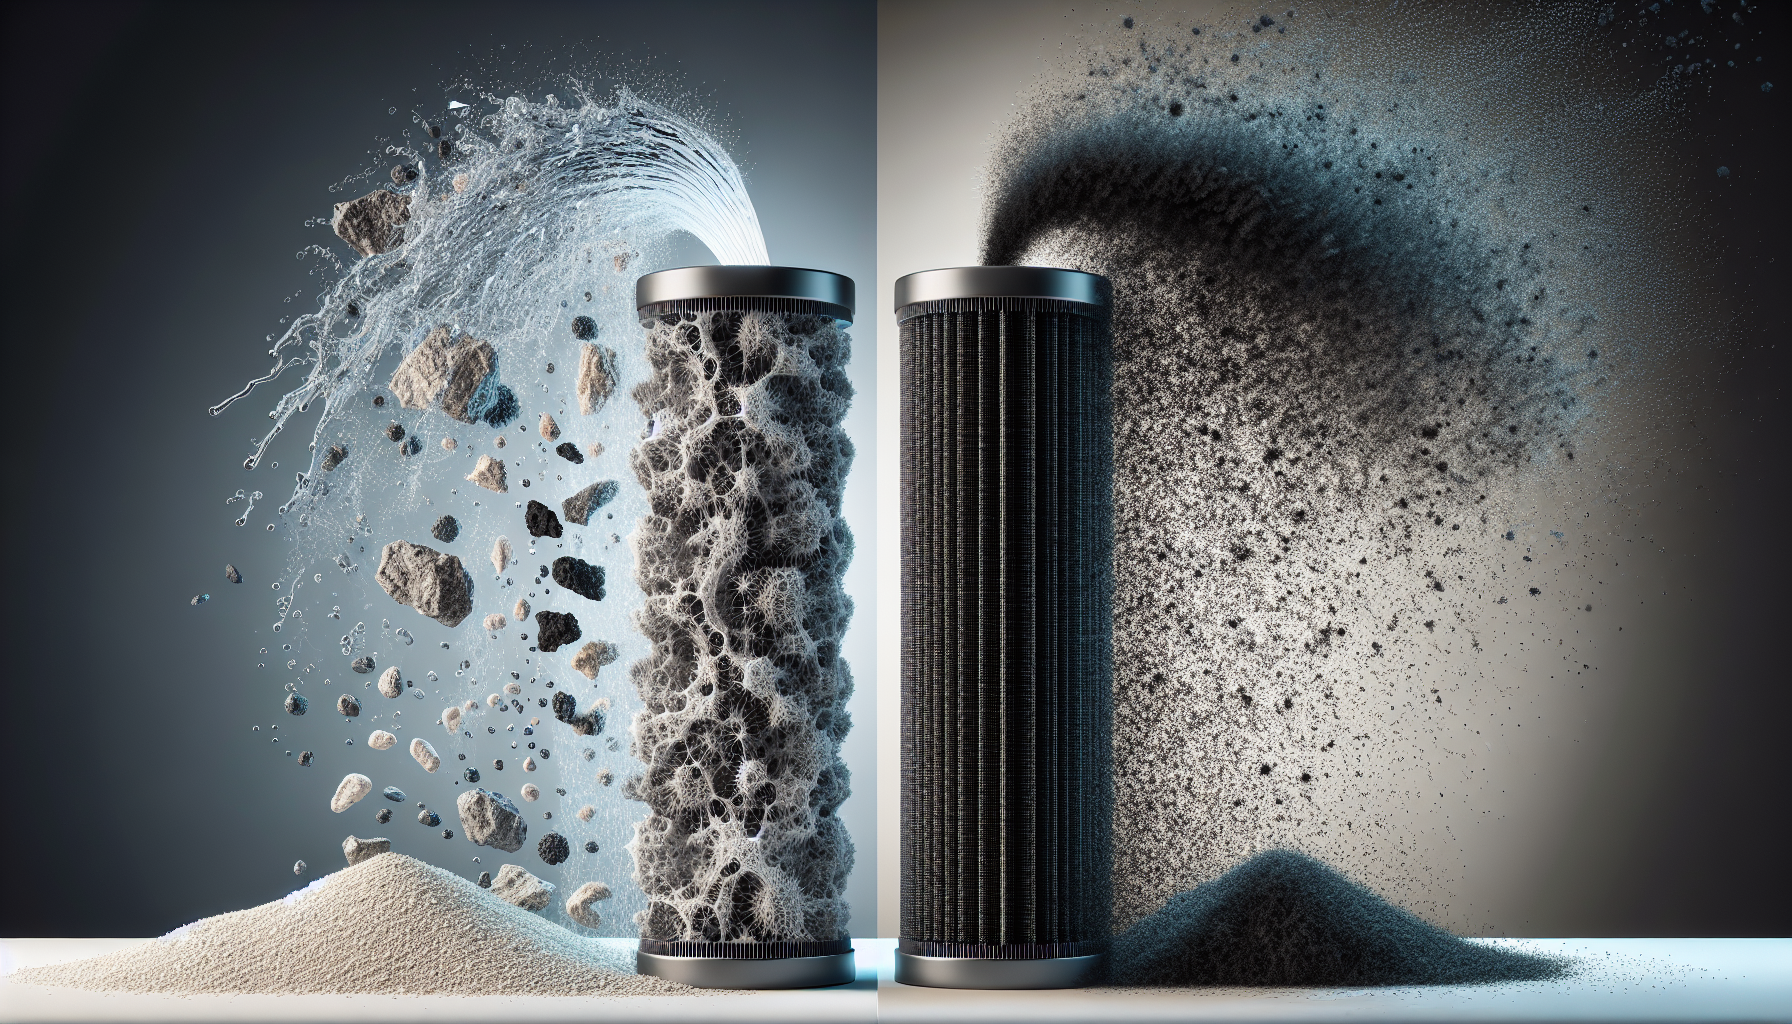 Sediment and carbon filter comparison